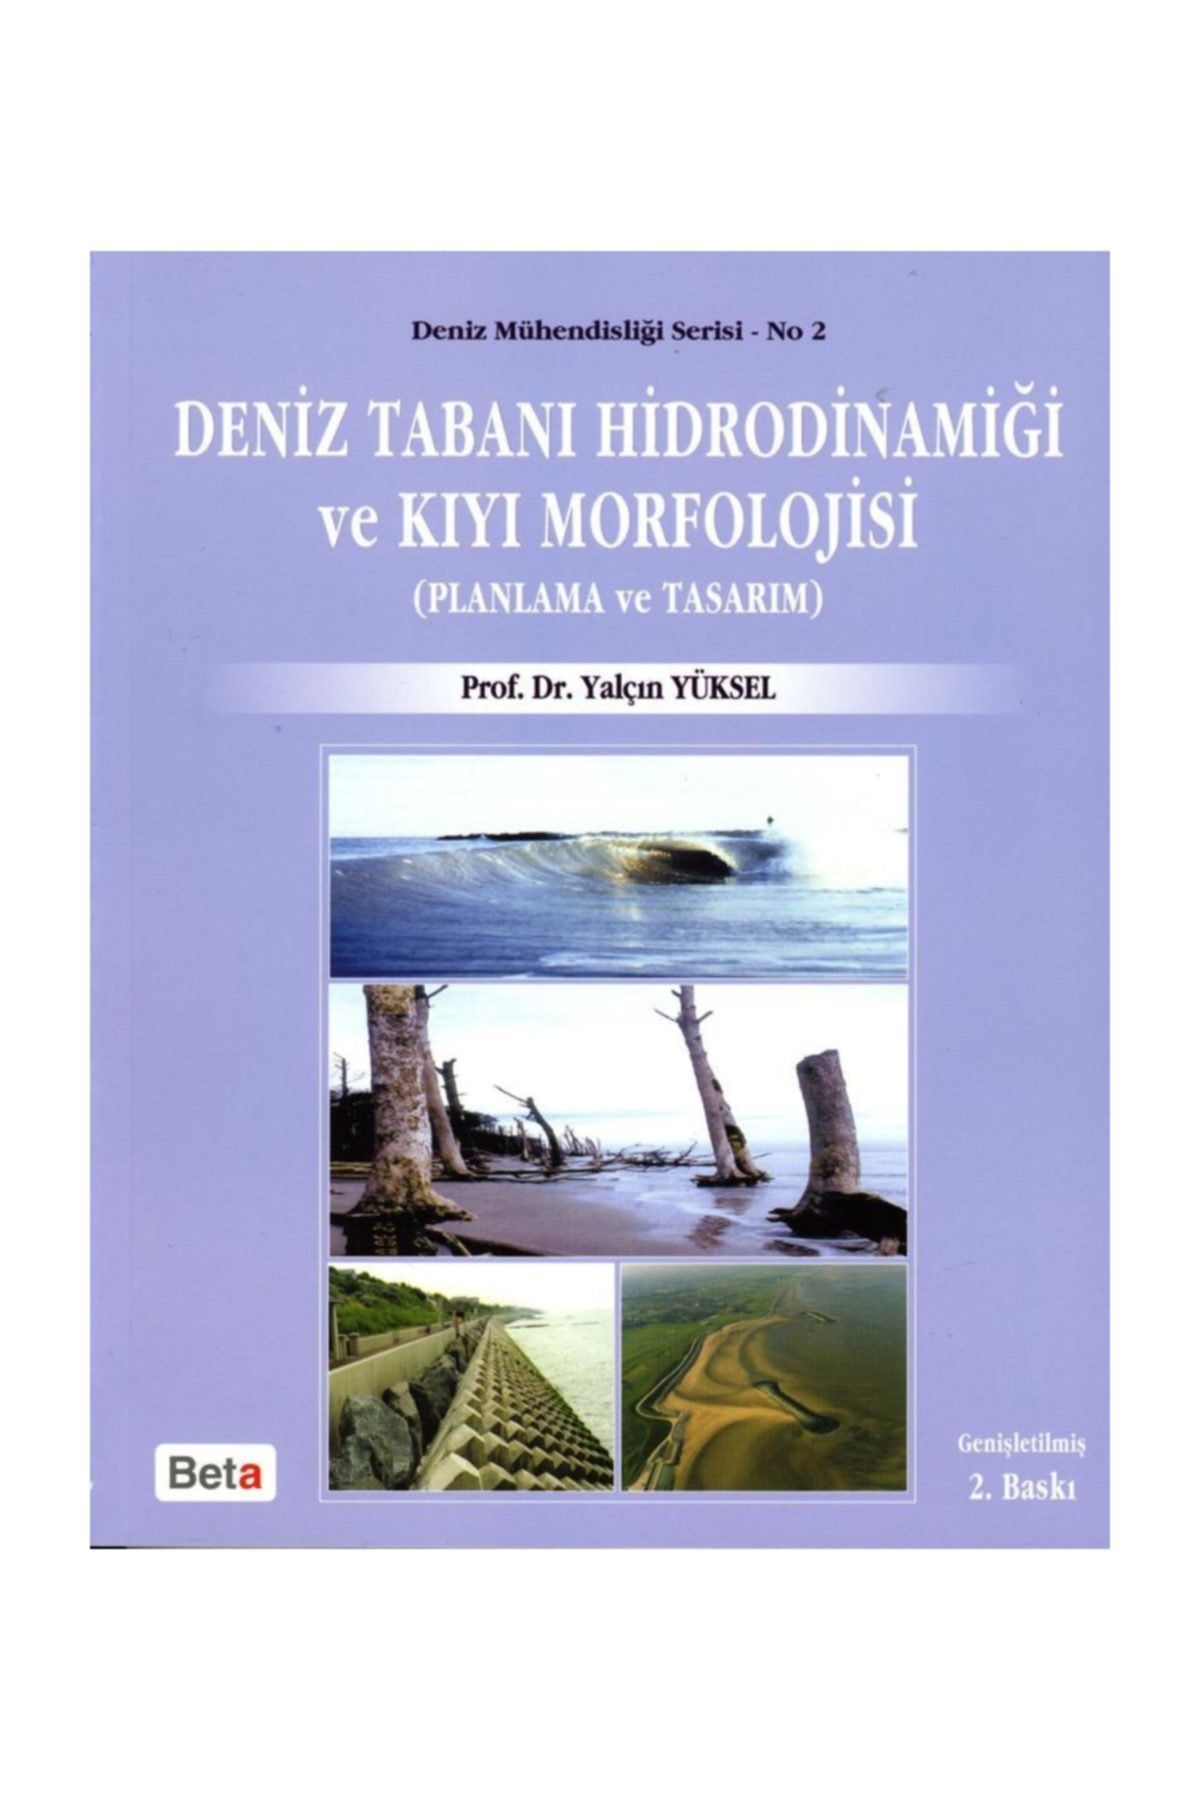 Beta Yayınları Deniz Tabanı Hidrodinamiği Ve Kıyı Morfolojisi & Planlama Ve Tasarım